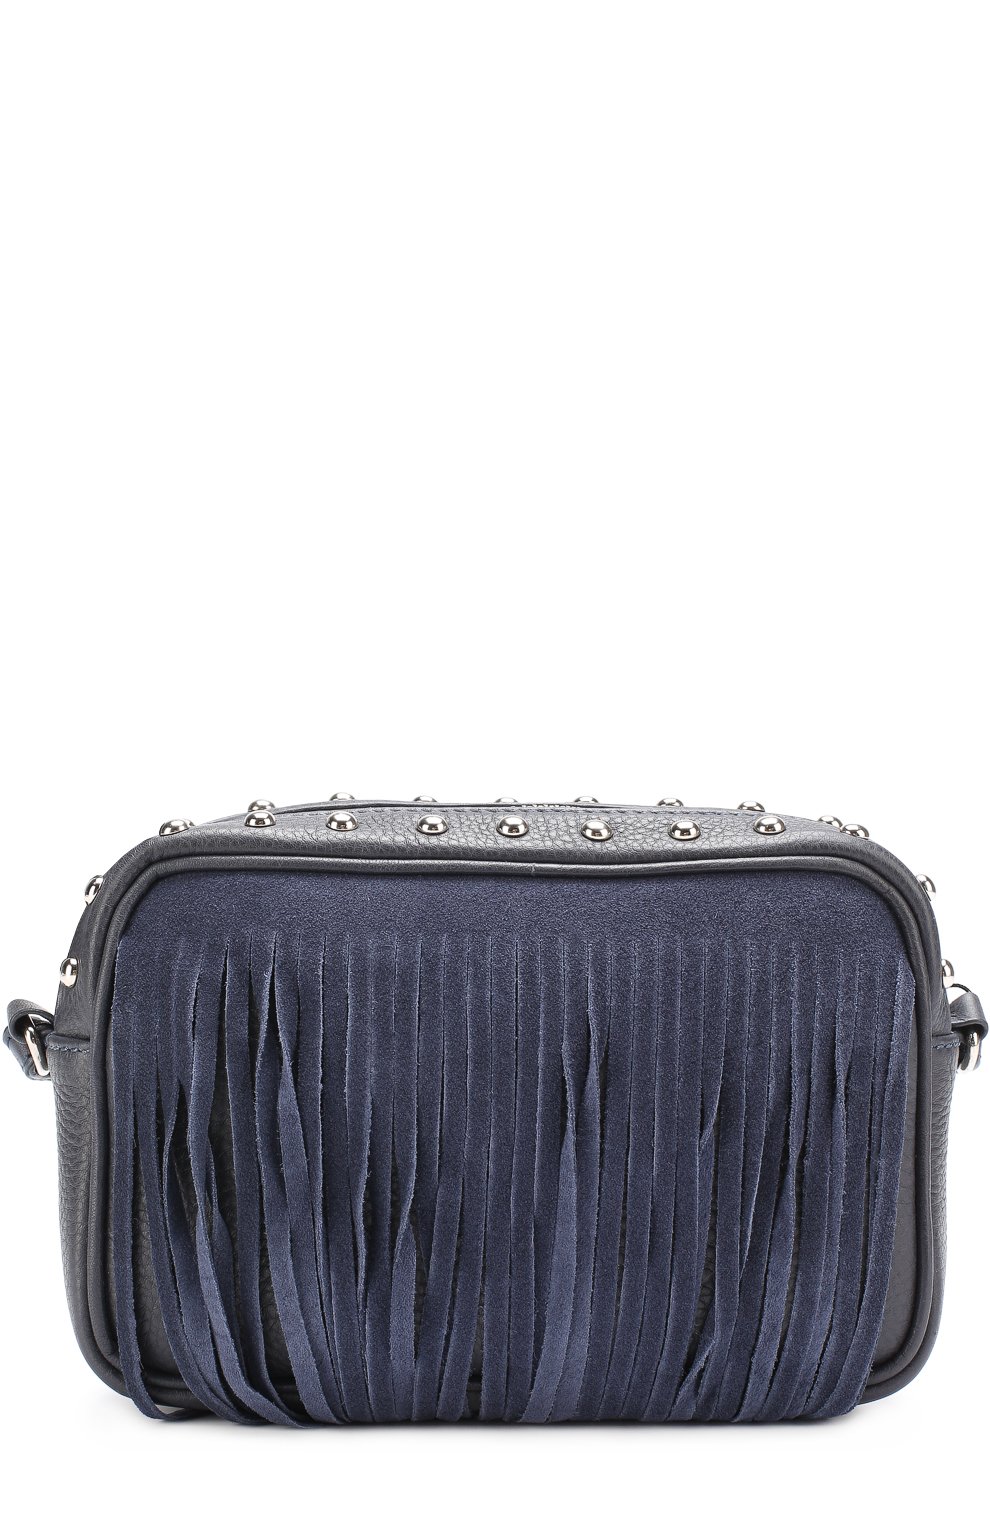 Кожаная сумка с бахромой и заклепками DESIGNERS, REMIX GIRLS детская  темно-синего цвета — купить в интернет-магазине ЦУМ, арт. 13437